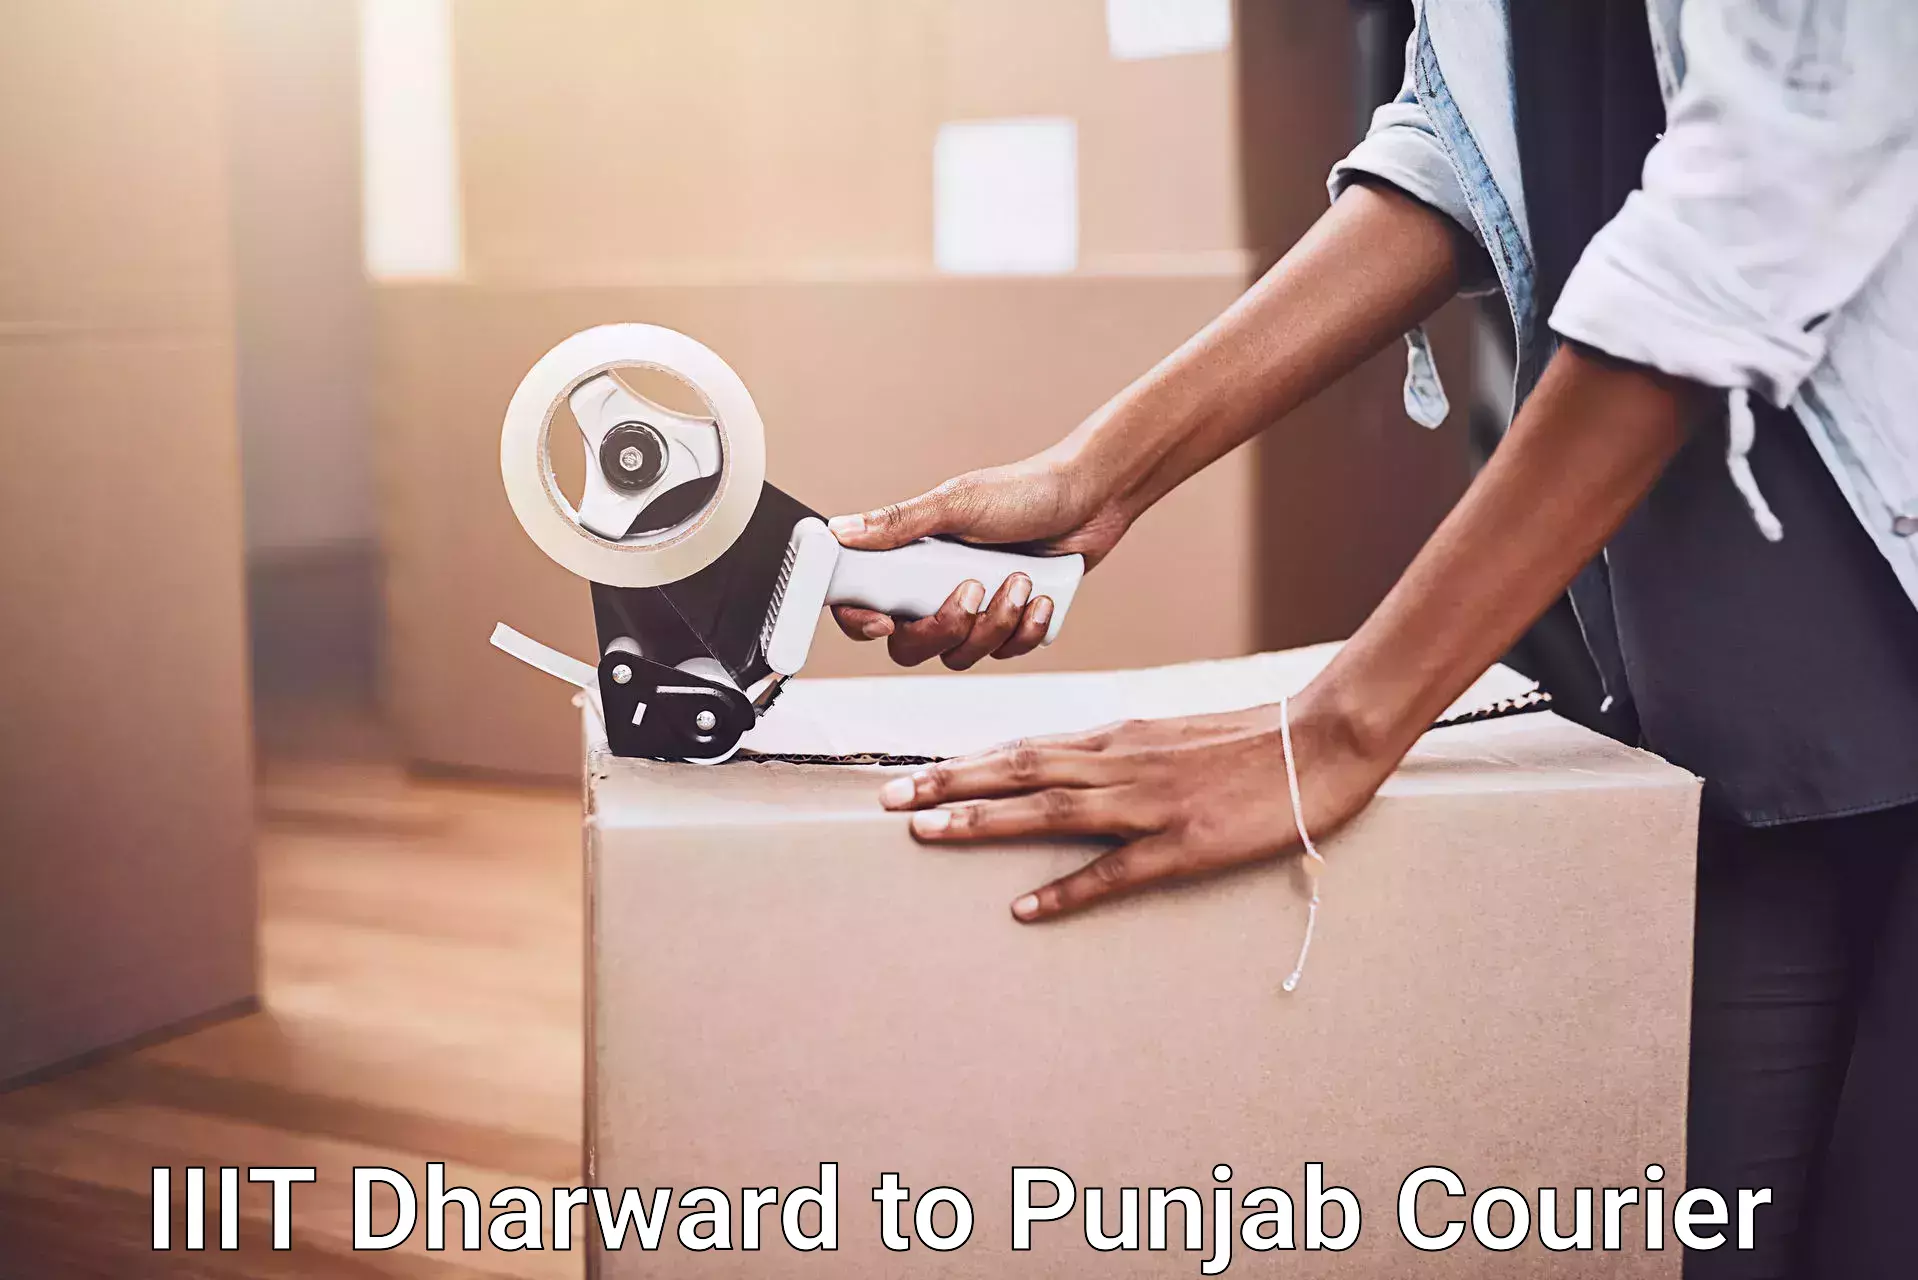 Furniture delivery service in IIIT Dharward to Zirakpur